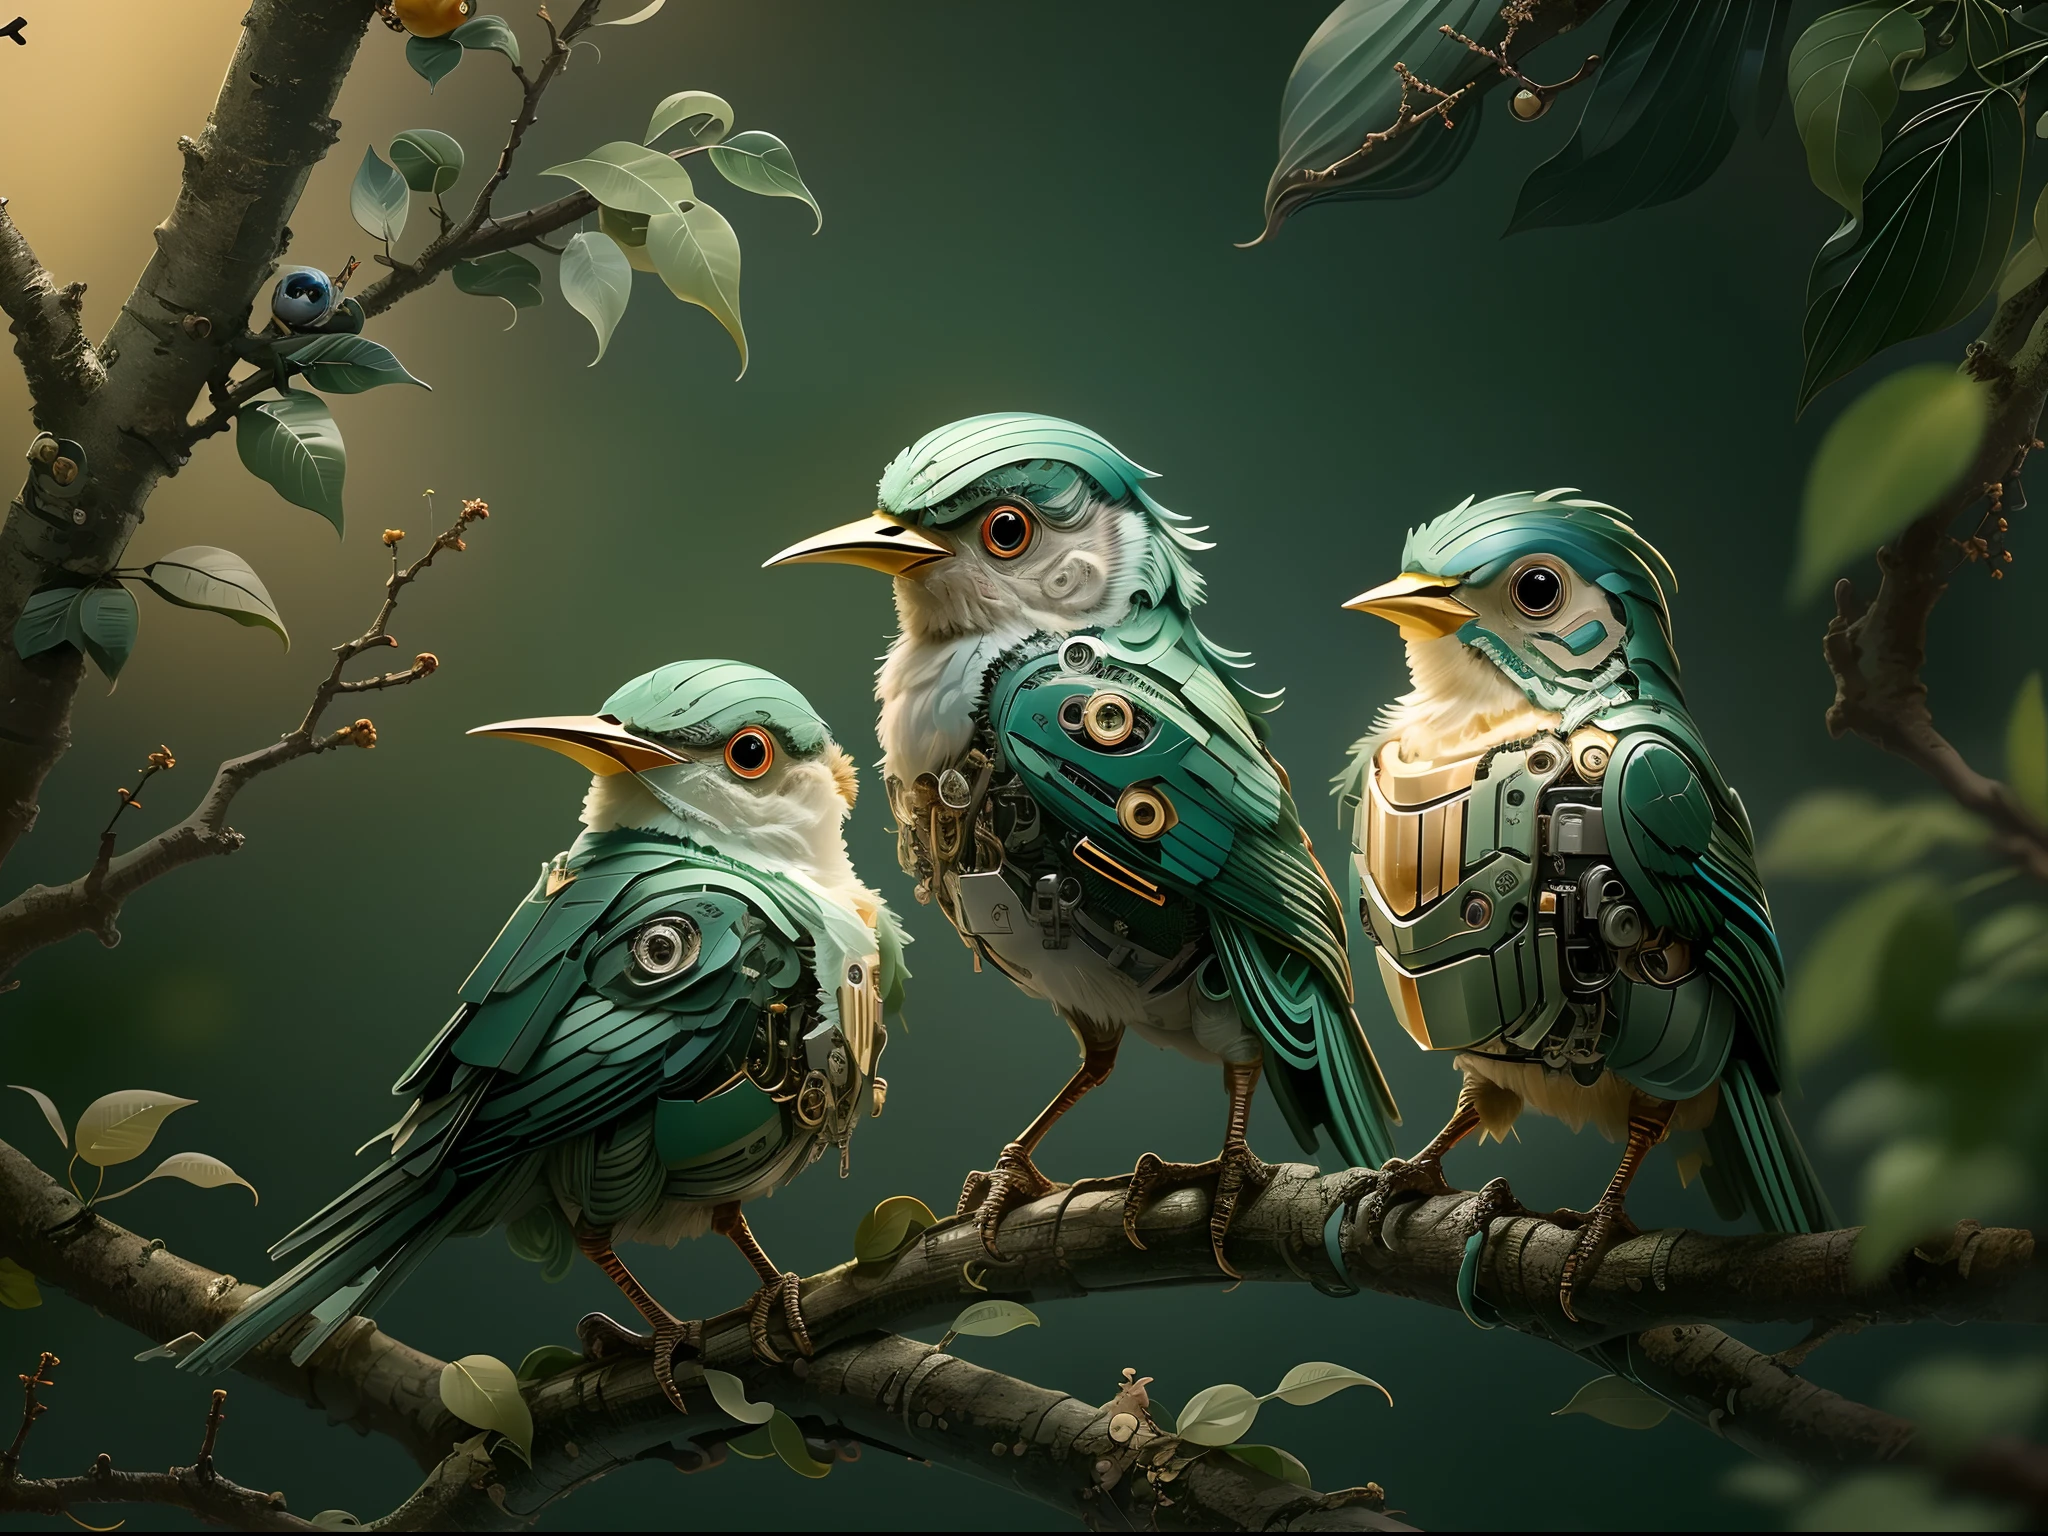 (最高品質,4K,8k,高解像度,傑作:1.2)。(枝には3羽のかわいい機械の鳥がいます:1.2)，光る目，鋭いくちばし,。美しく柔らかな照明, エッジライト,グローバルイルミネーション，精巧なディテール。